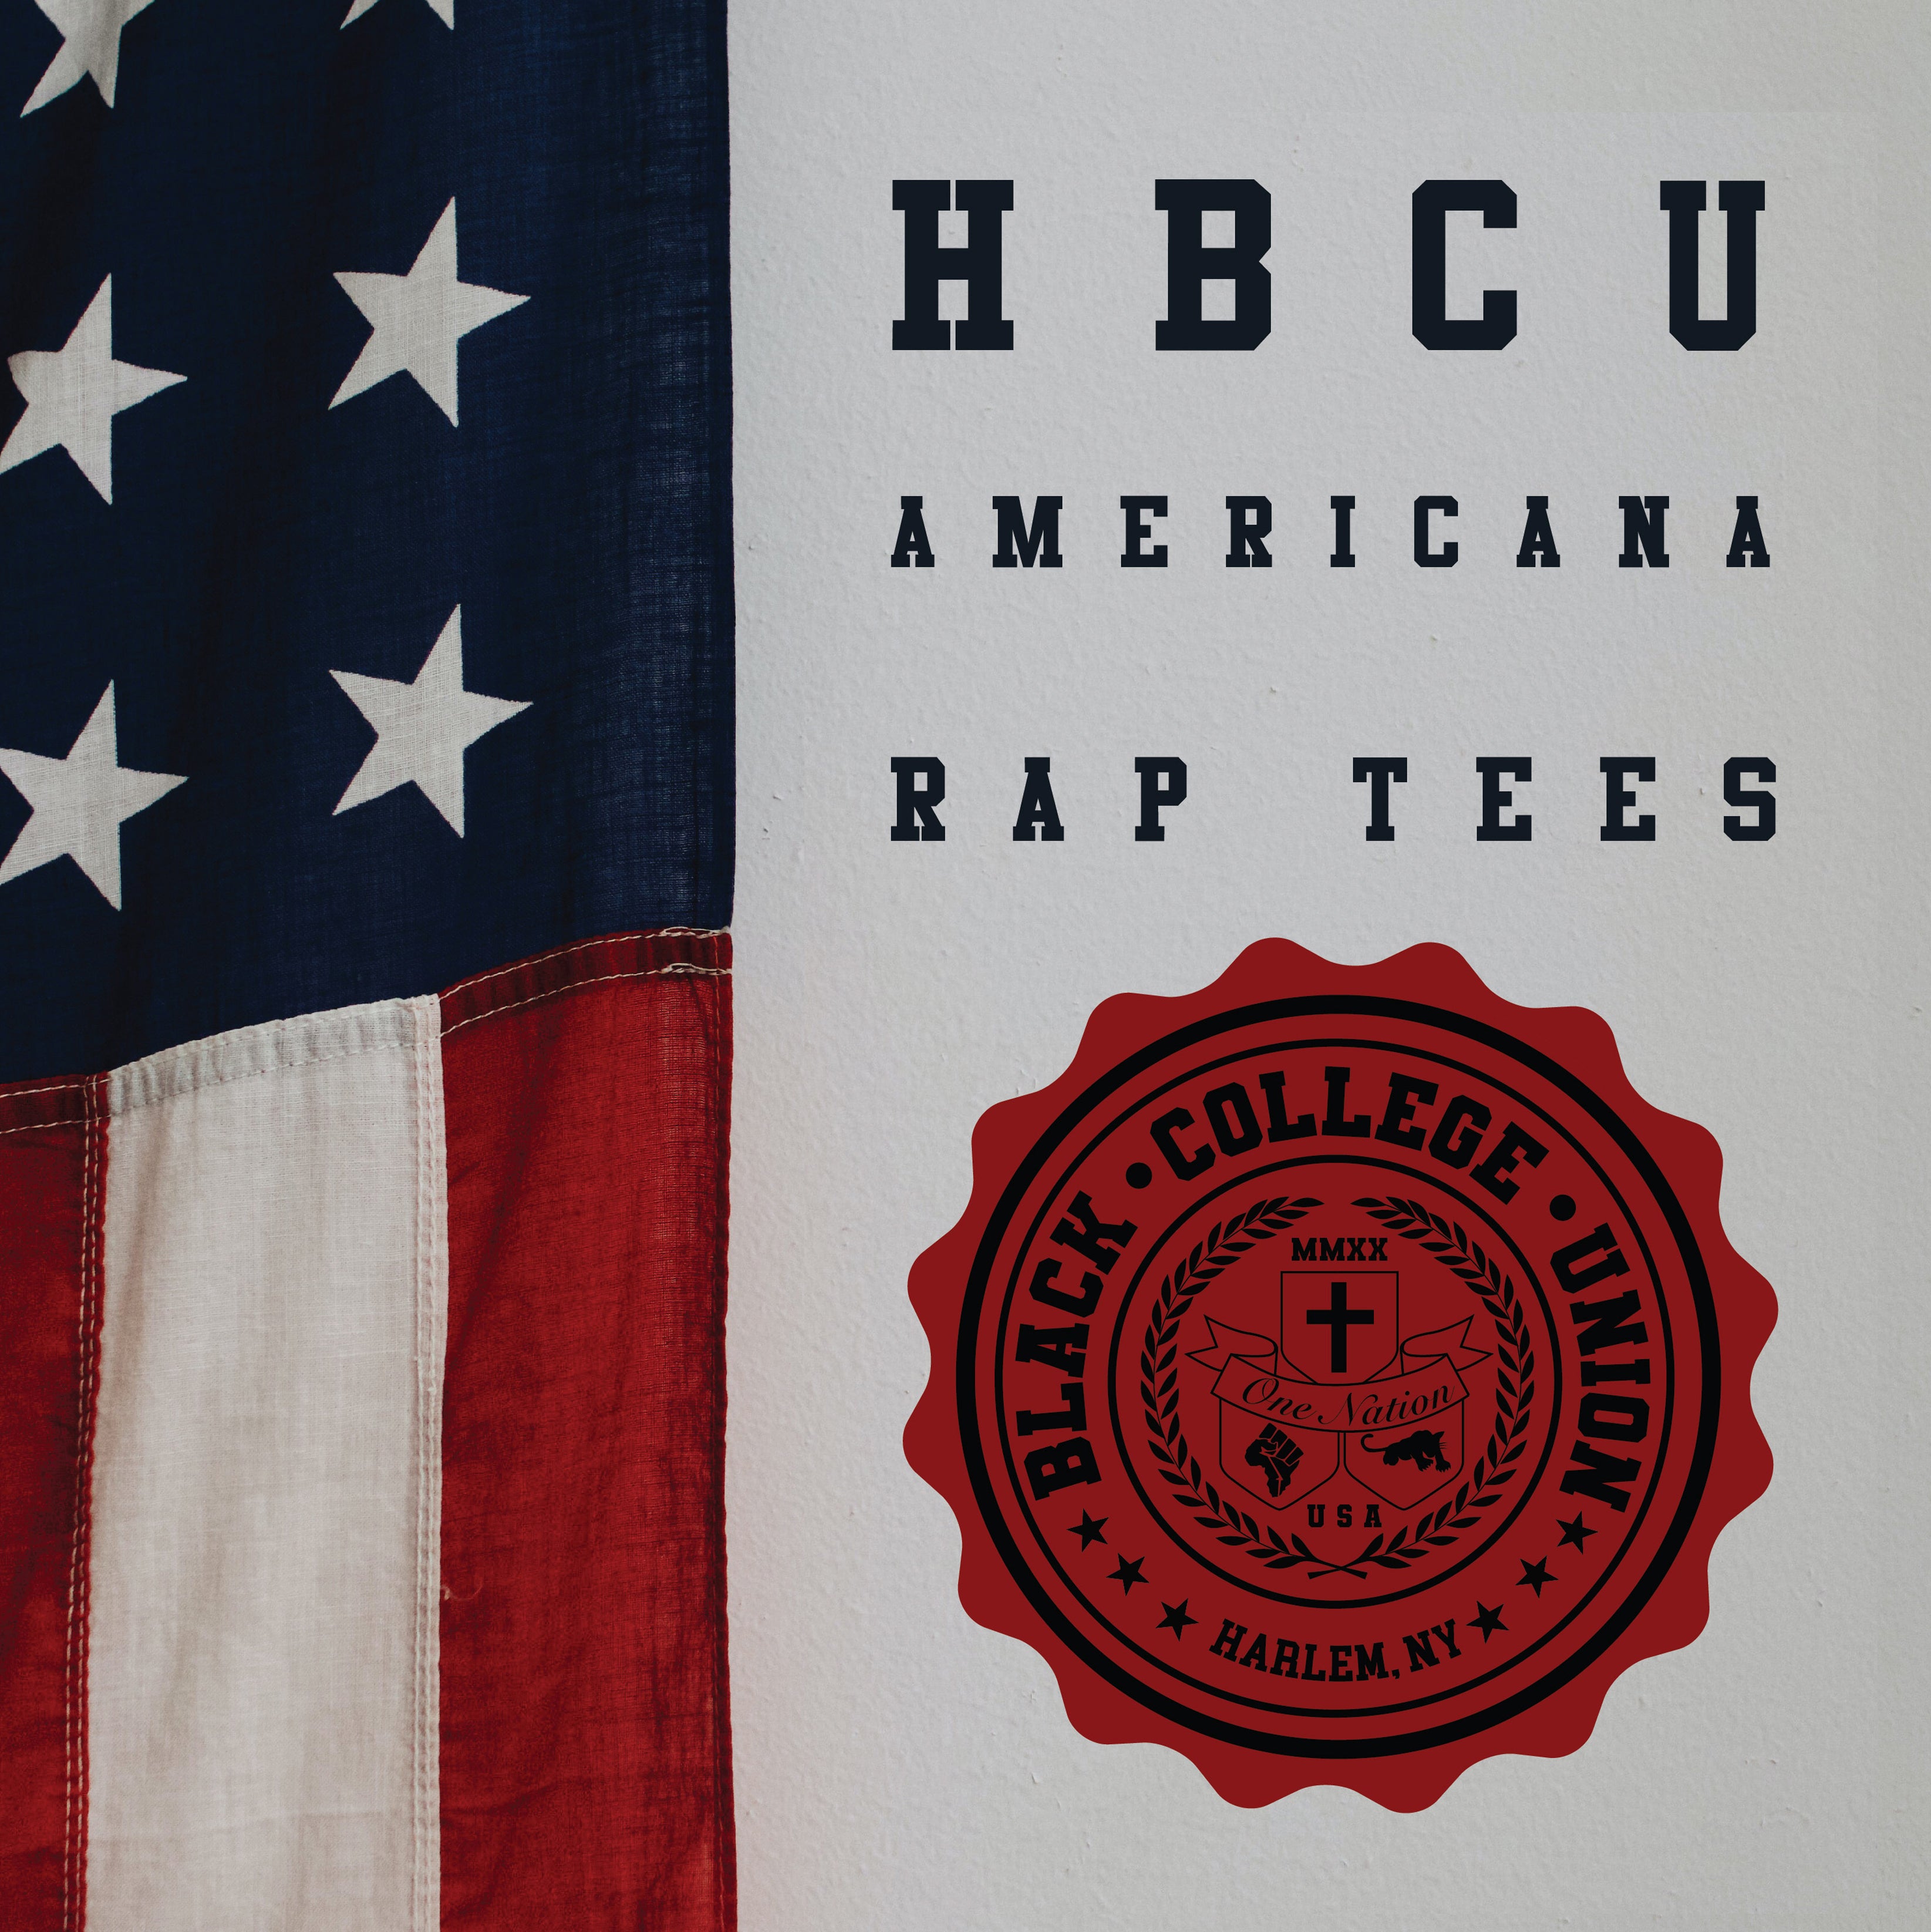 BCU X Champion Original HBCU Americana Rap Tee - Morris College